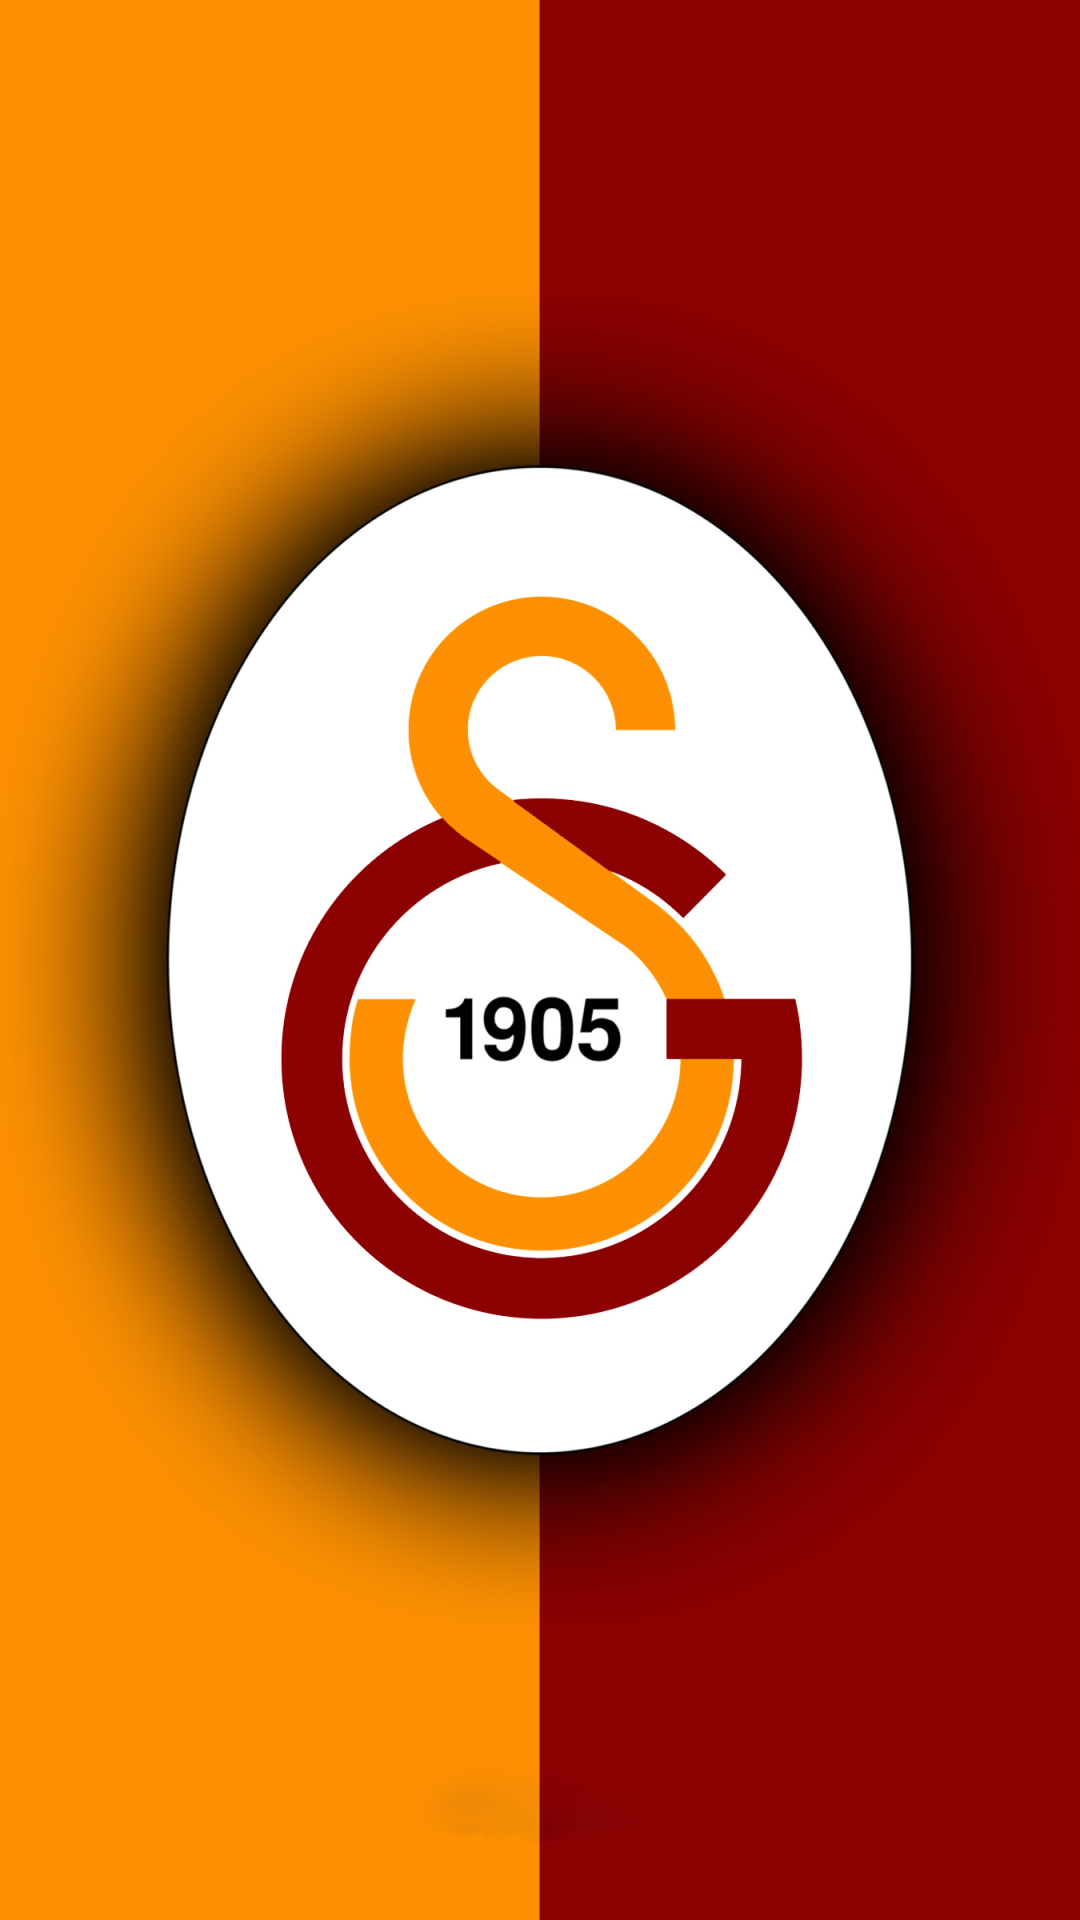 無料モバイル壁紙スポーツ, サッカー, ロゴ, 象徴, ガラタサライ S Kをダウンロードします。